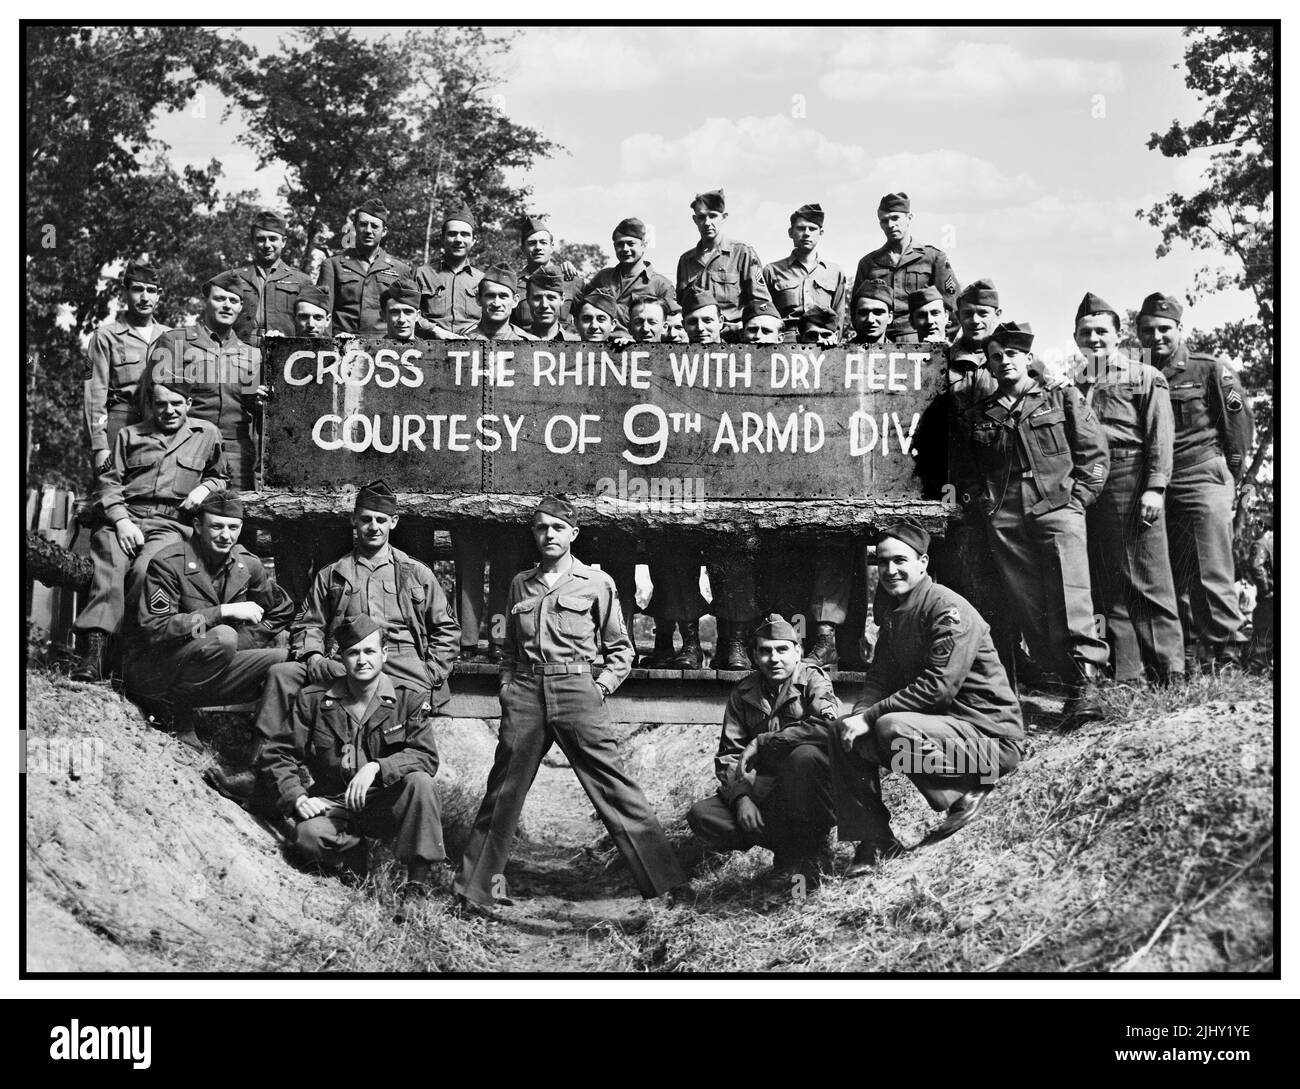 WW2 EE.UU. Propaganda imagen de 9th Armored División Logro de cruzar y puentear el río Rin en la Alemania nazi en el avance a Berlín Rin Alemania nazi Marzo 1945 Guerra Mundial !! Segunda Guerra Mundial Foto de stock